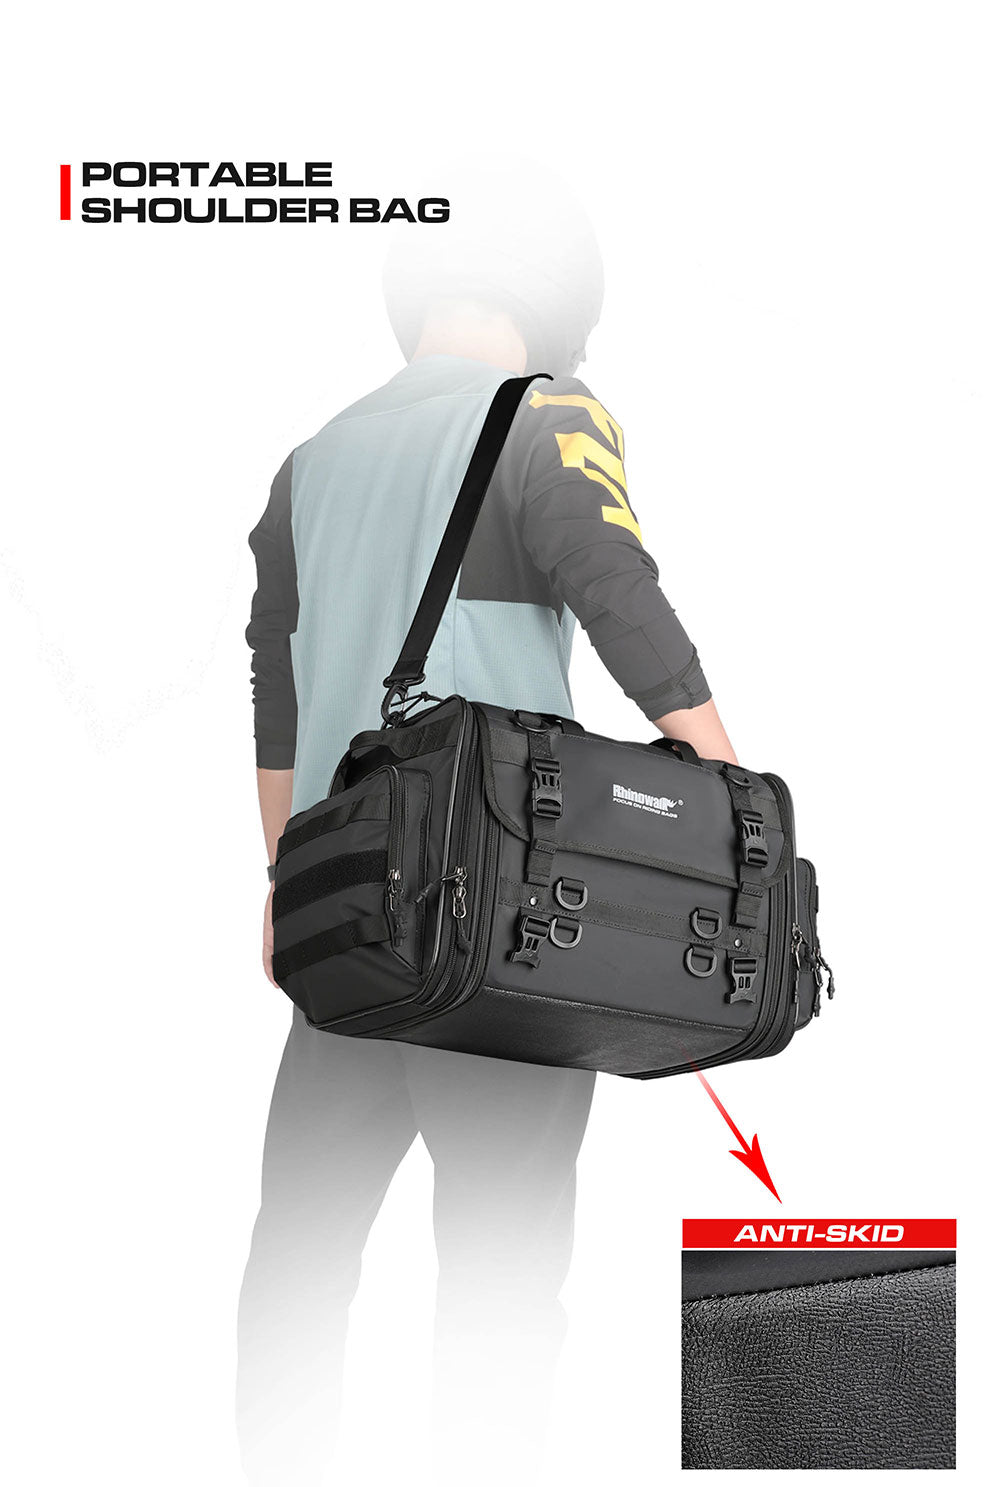 Wholesale Rhinowalk — sac de selle pour moto, guidon multifonctionnel,  sacoche avec outils pour siège arrière From m.alibaba.com